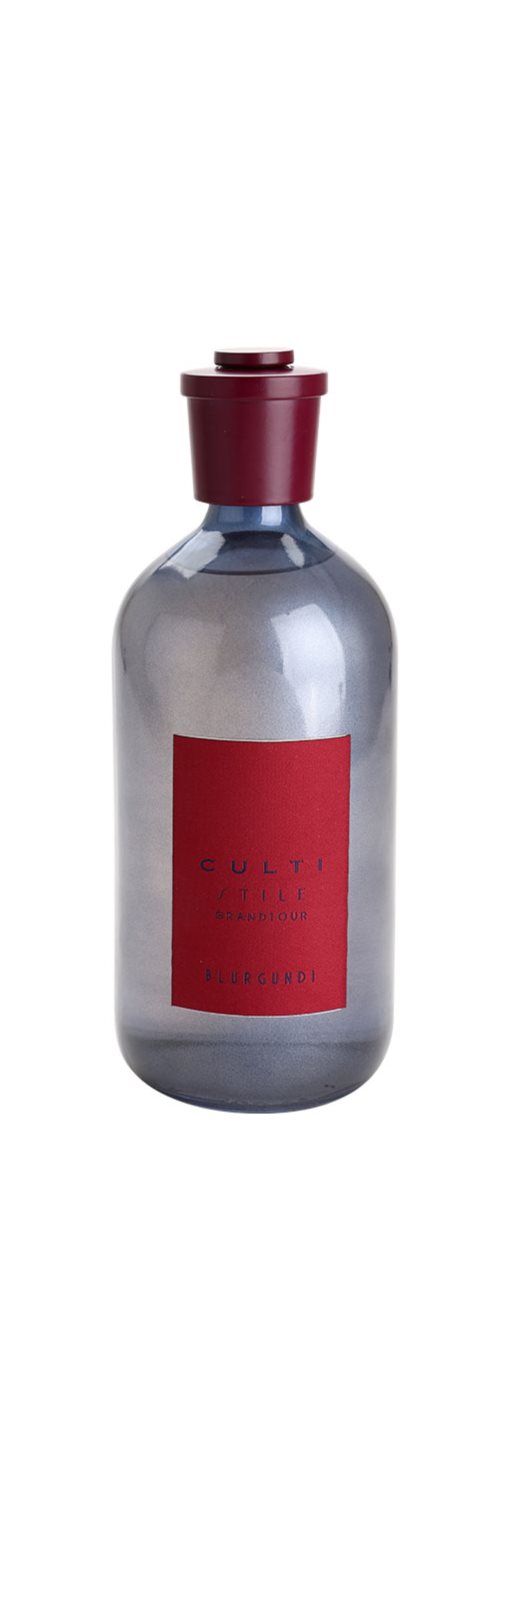 Culti - Stile Grandtour Acqua aroma diffuseur (Blurgundi)